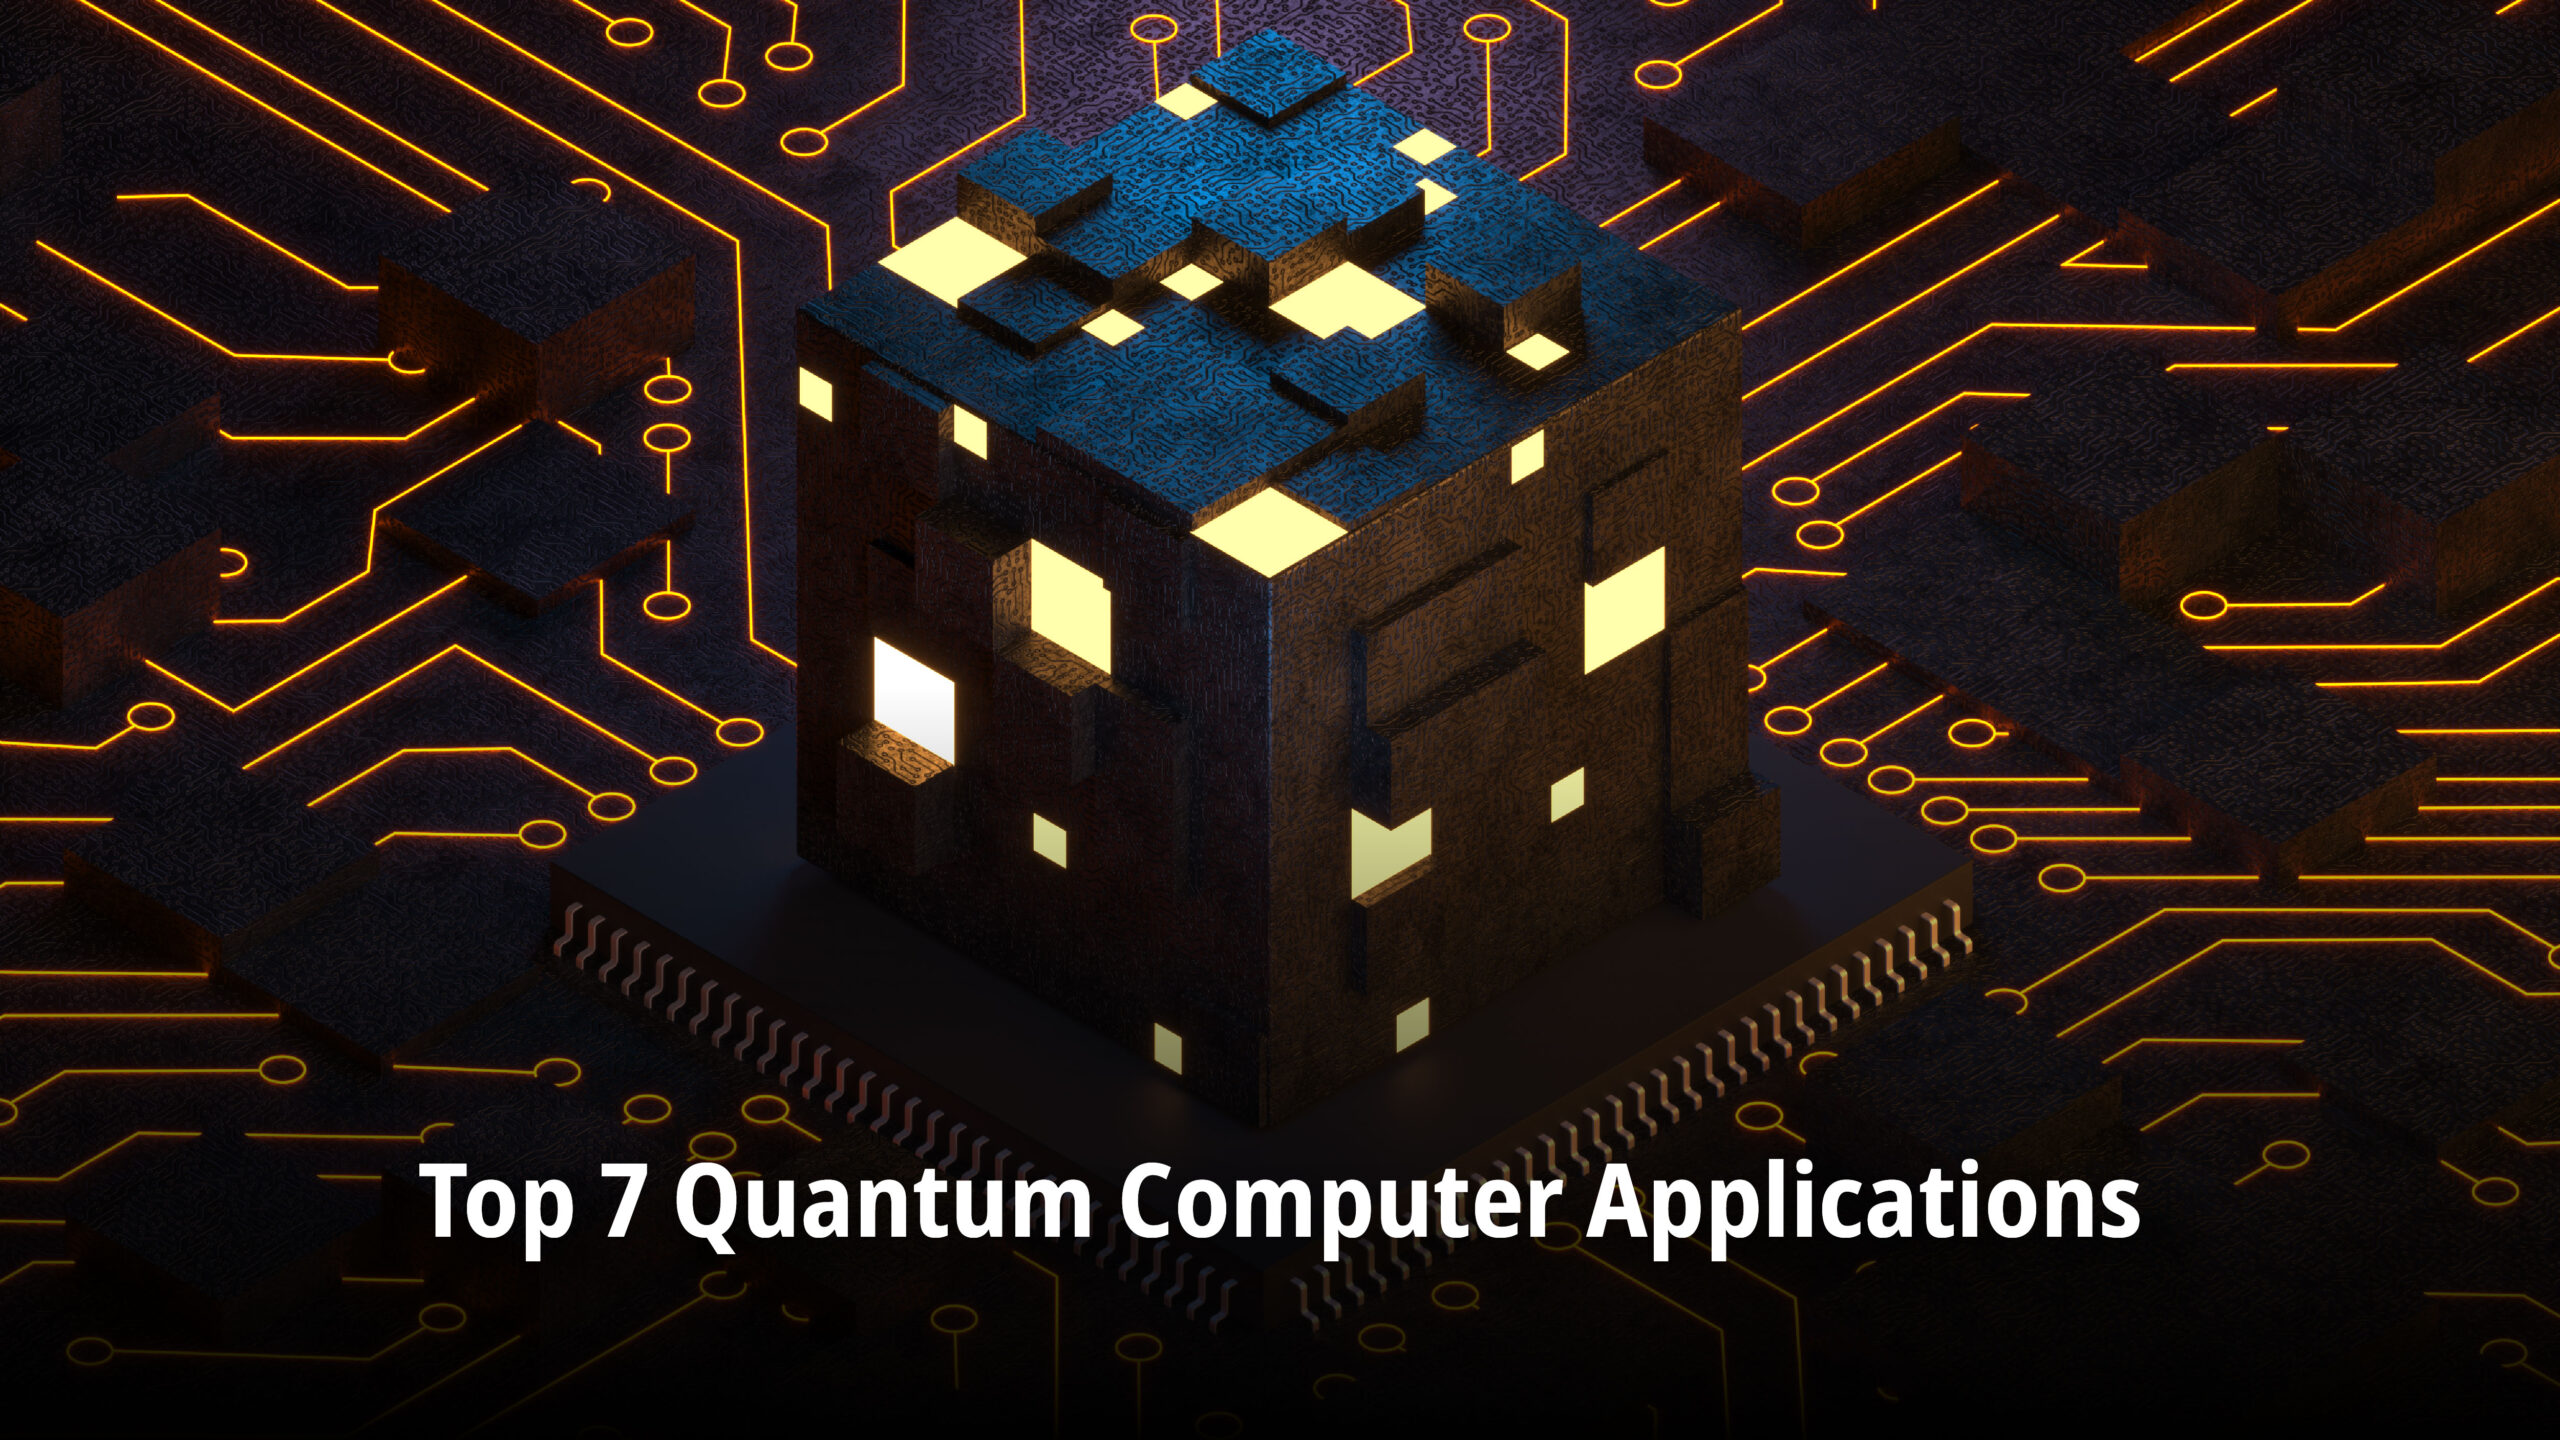 Quantum Computer